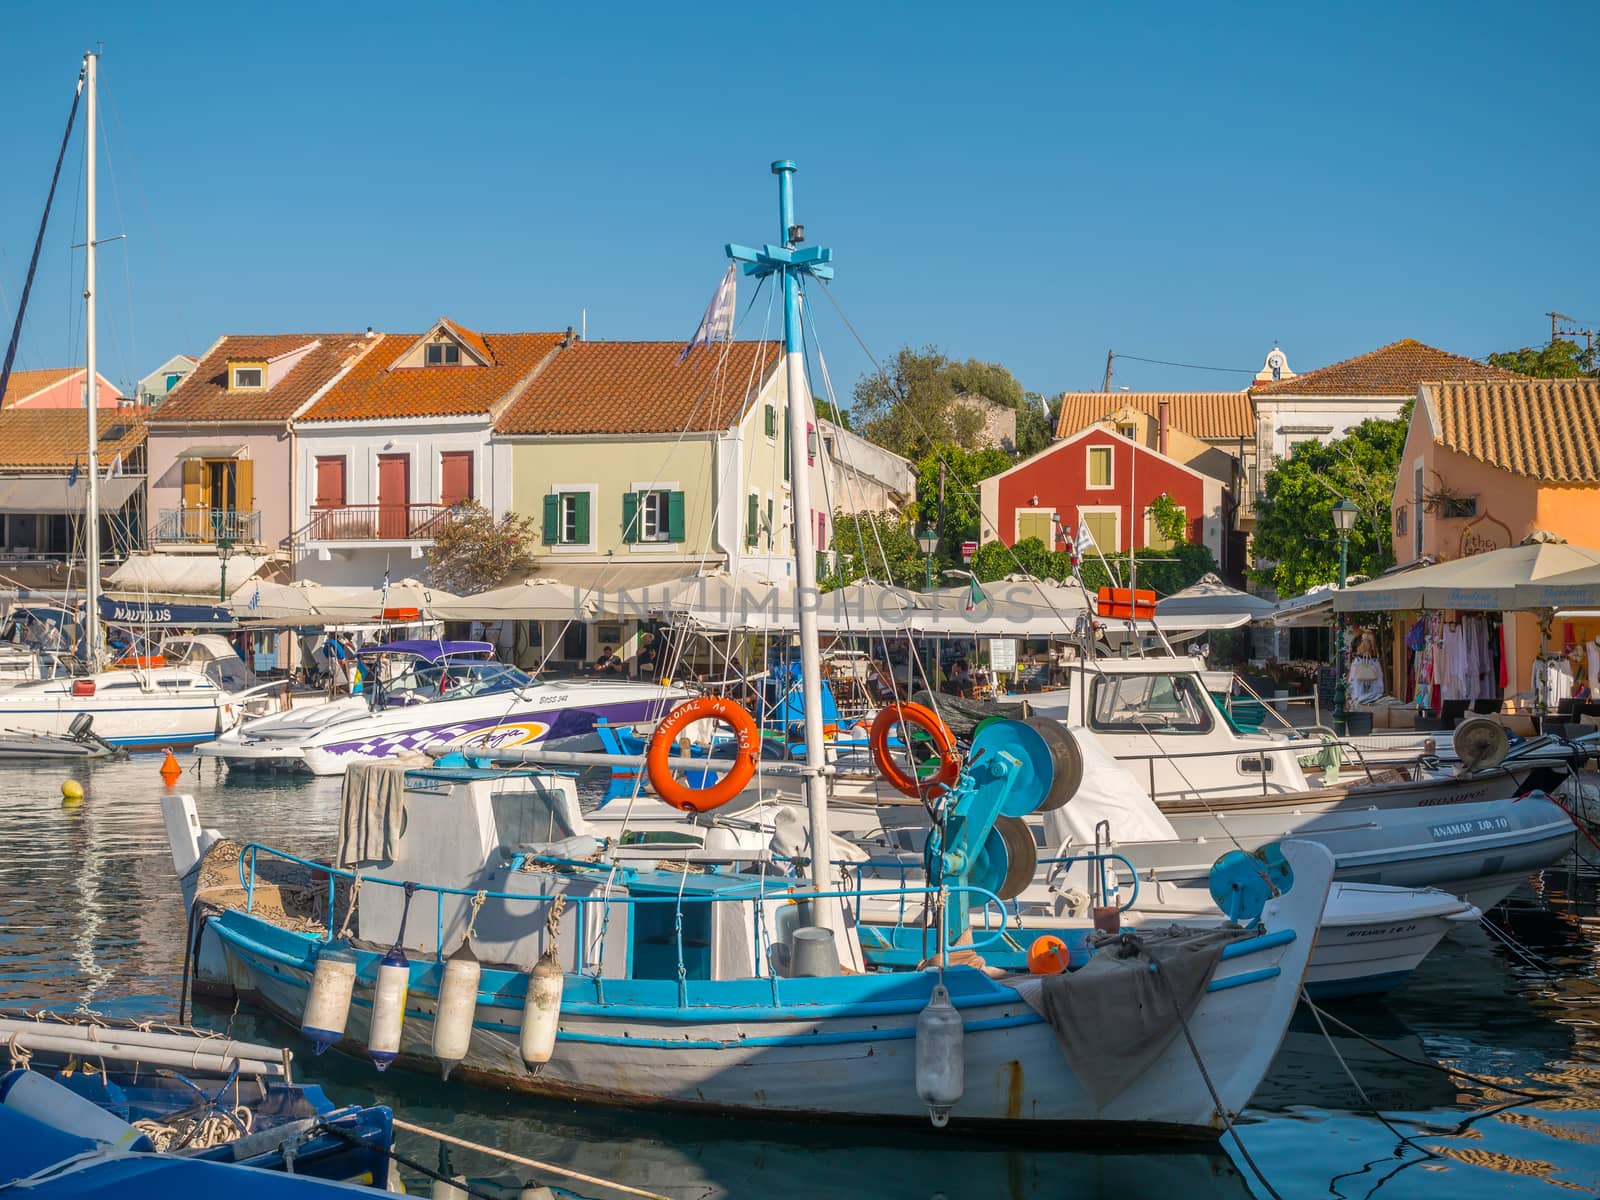 FISKARDO, GREECE - AUGUST 20, 2016: Fishing boats in the port of Fiskardo village Kefalonia island